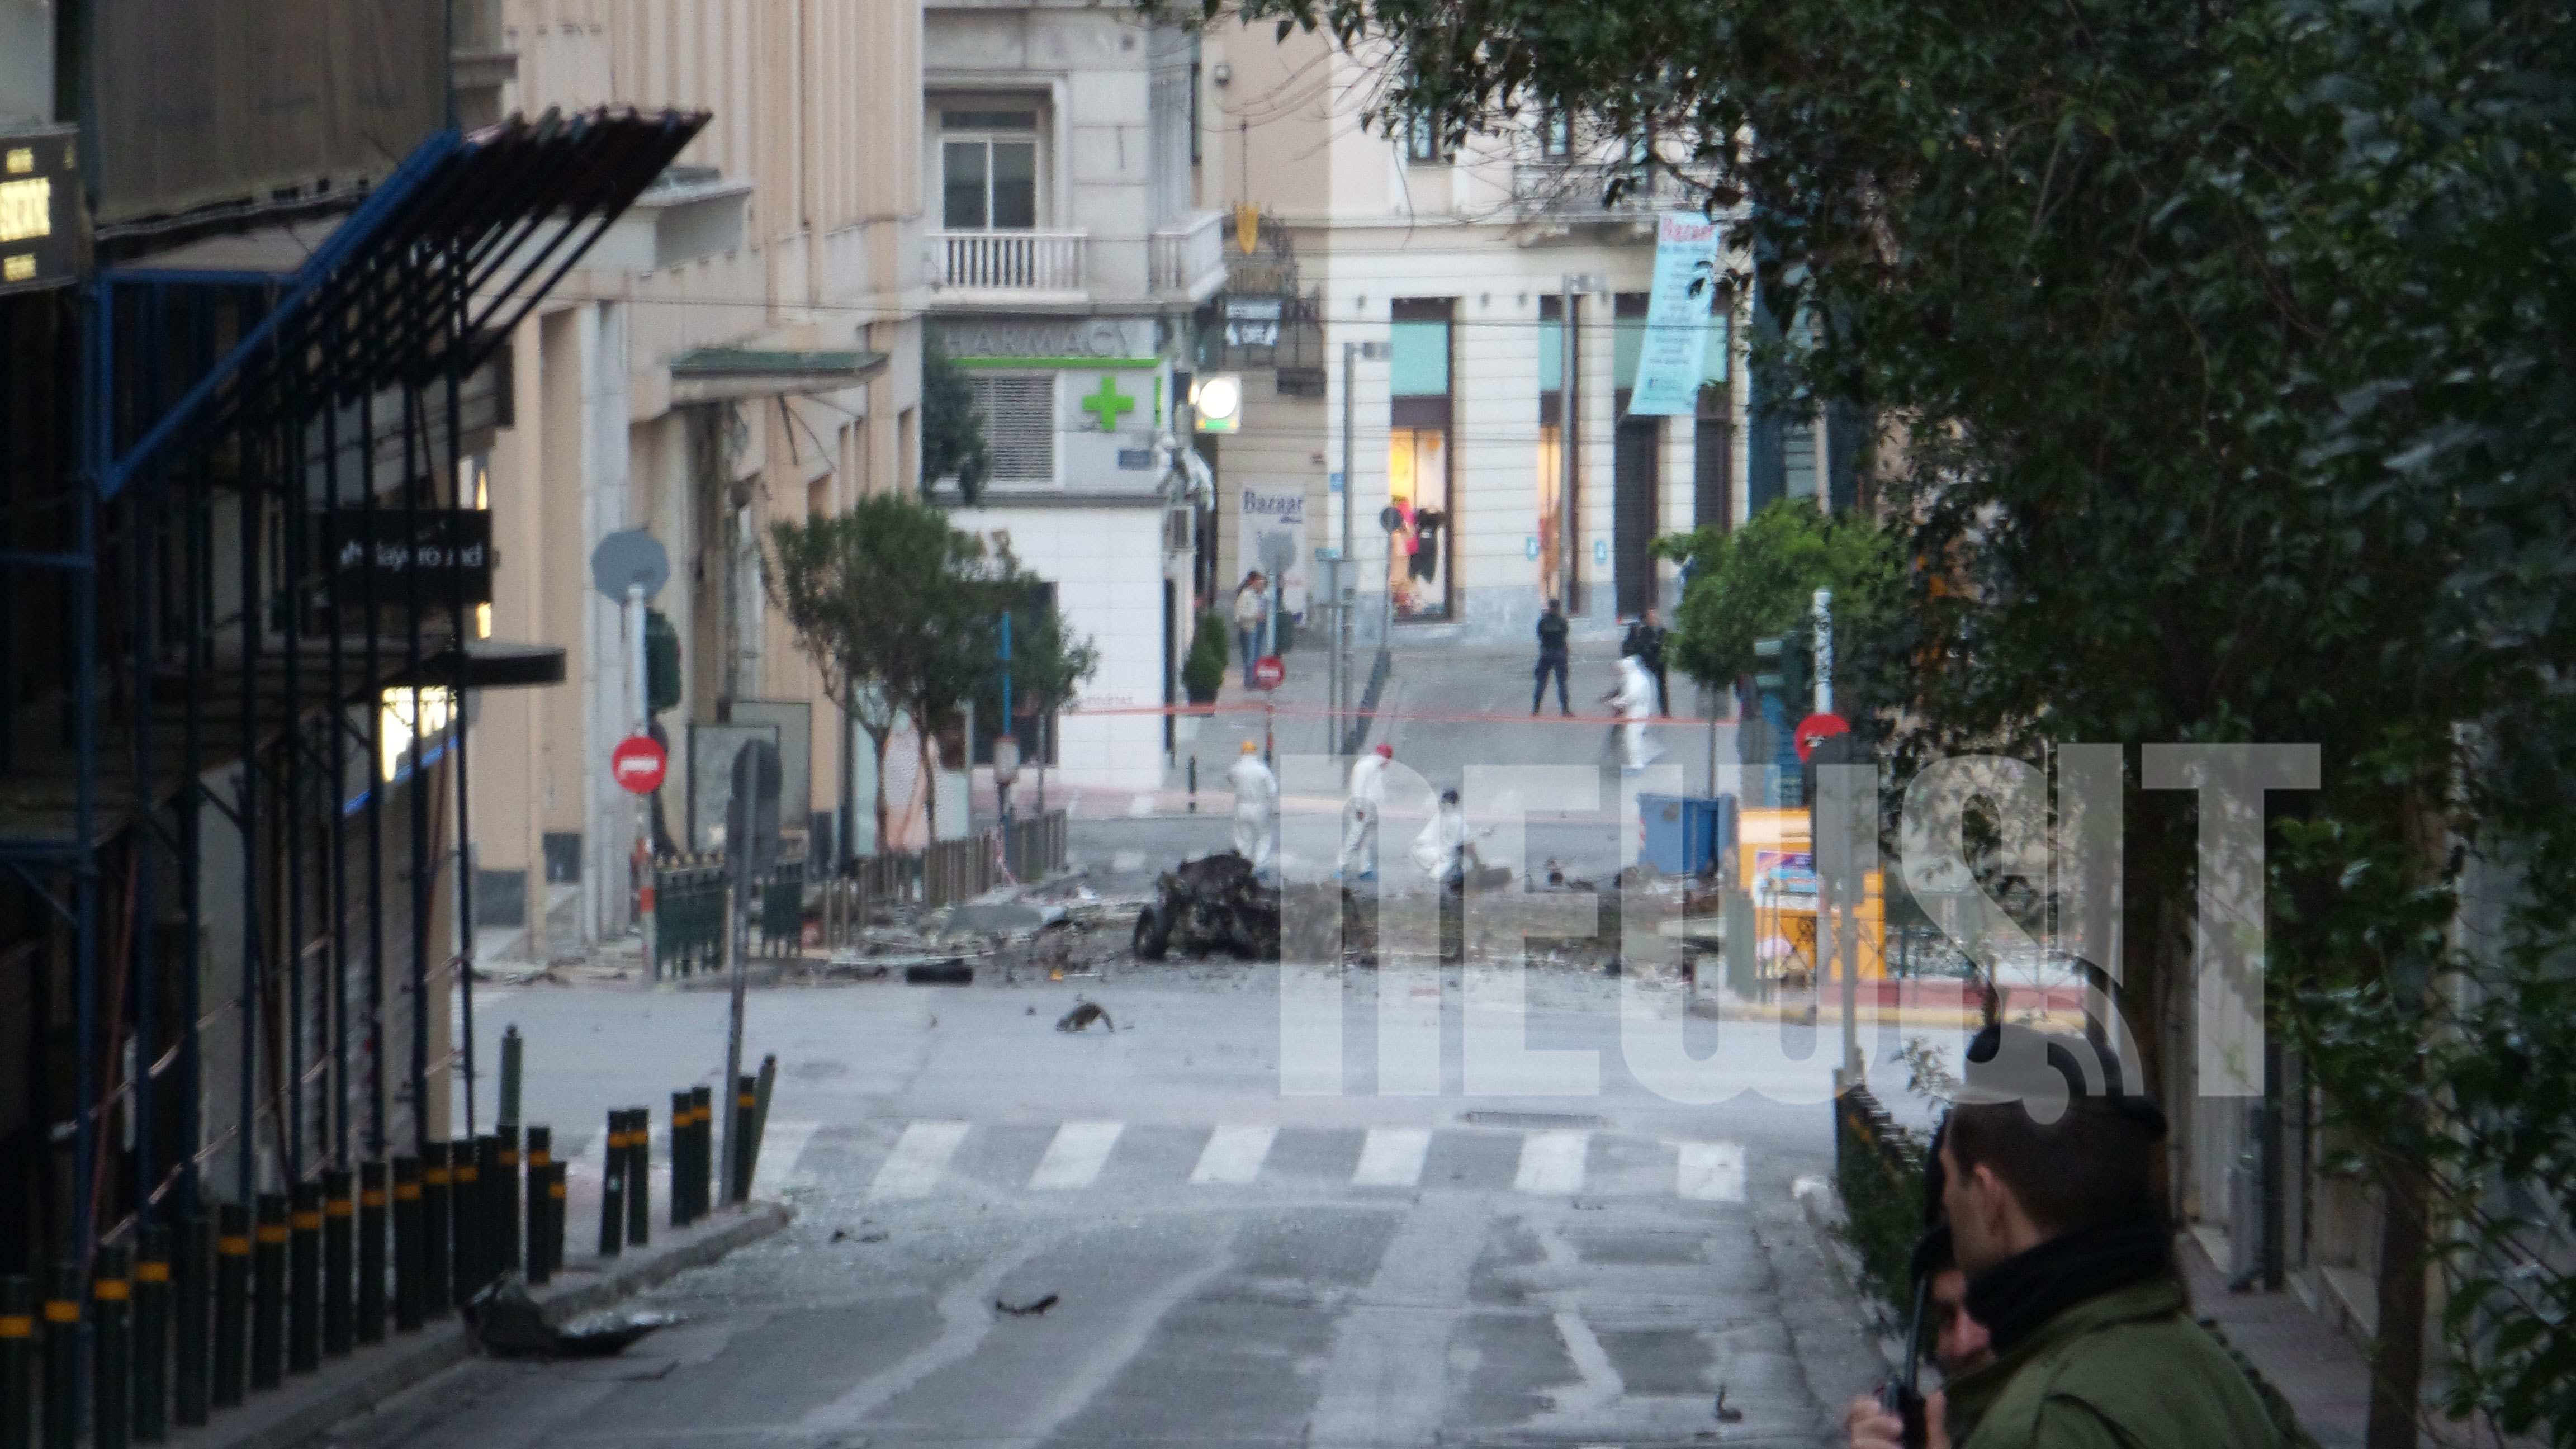 Παγιδευμένο με εκρηκτικά αυτοκίνητο εξερράγη στο κέντρο της Αθήνας – Μεγάλες υλικές ζημιές, δεν υπάρχουν τραυματισμοί